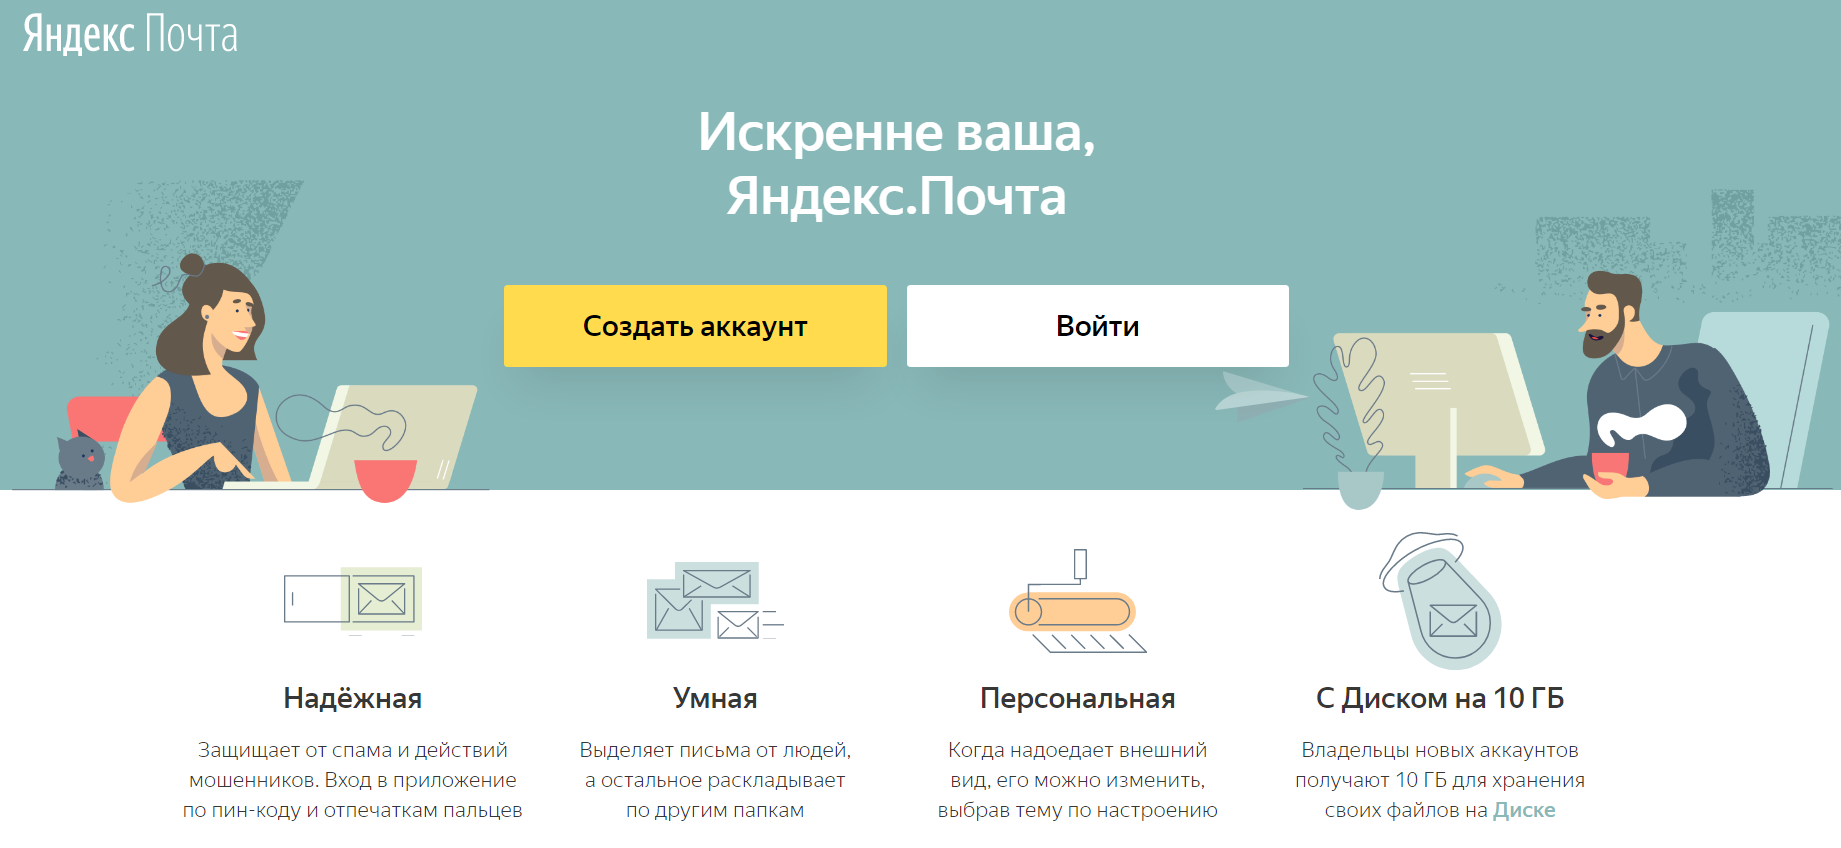 Яндекс Почта главная